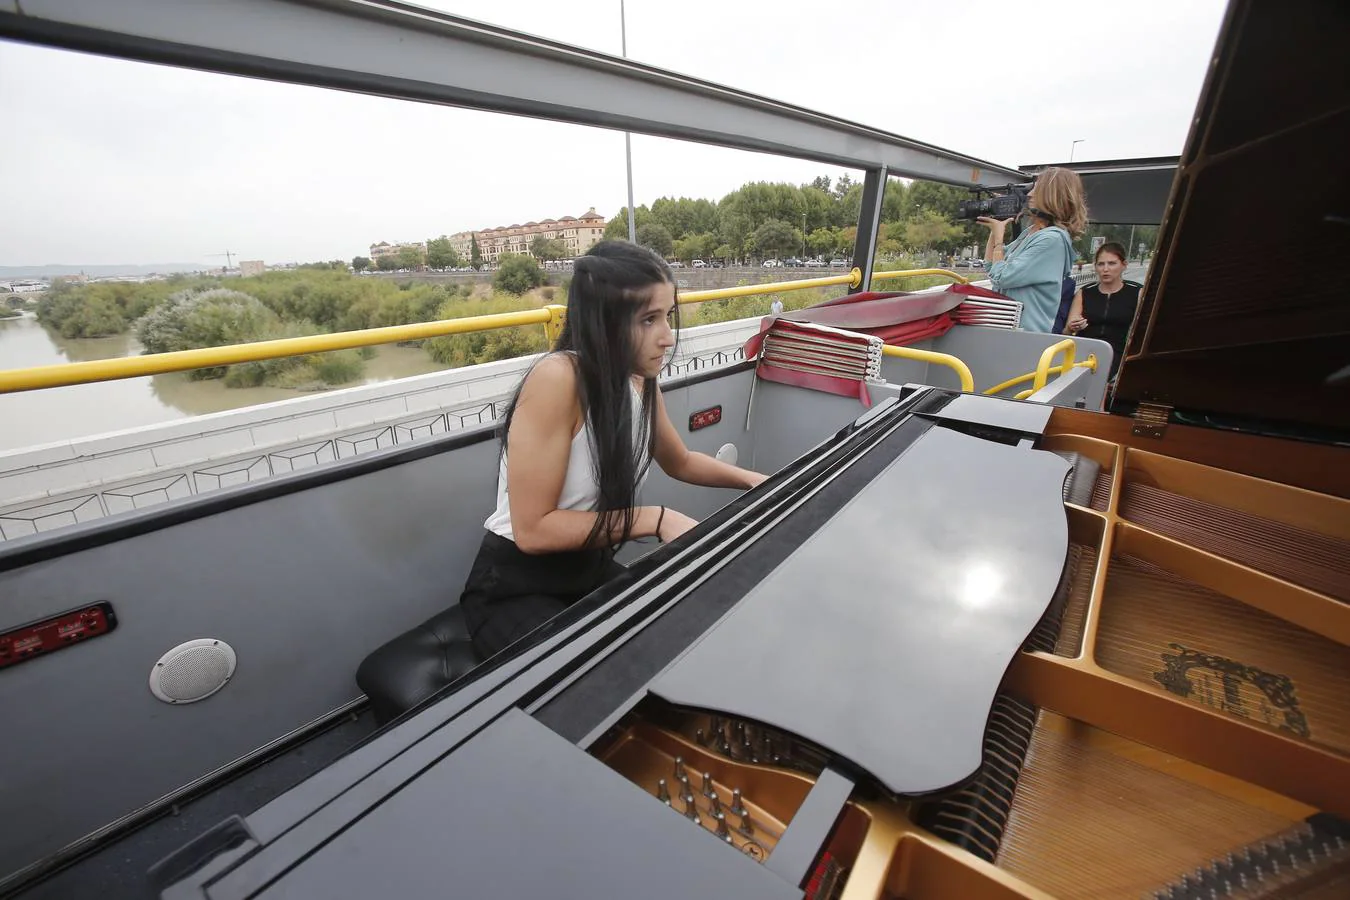 Un paseo por Córdoba en autobús y con piano, en imágenes